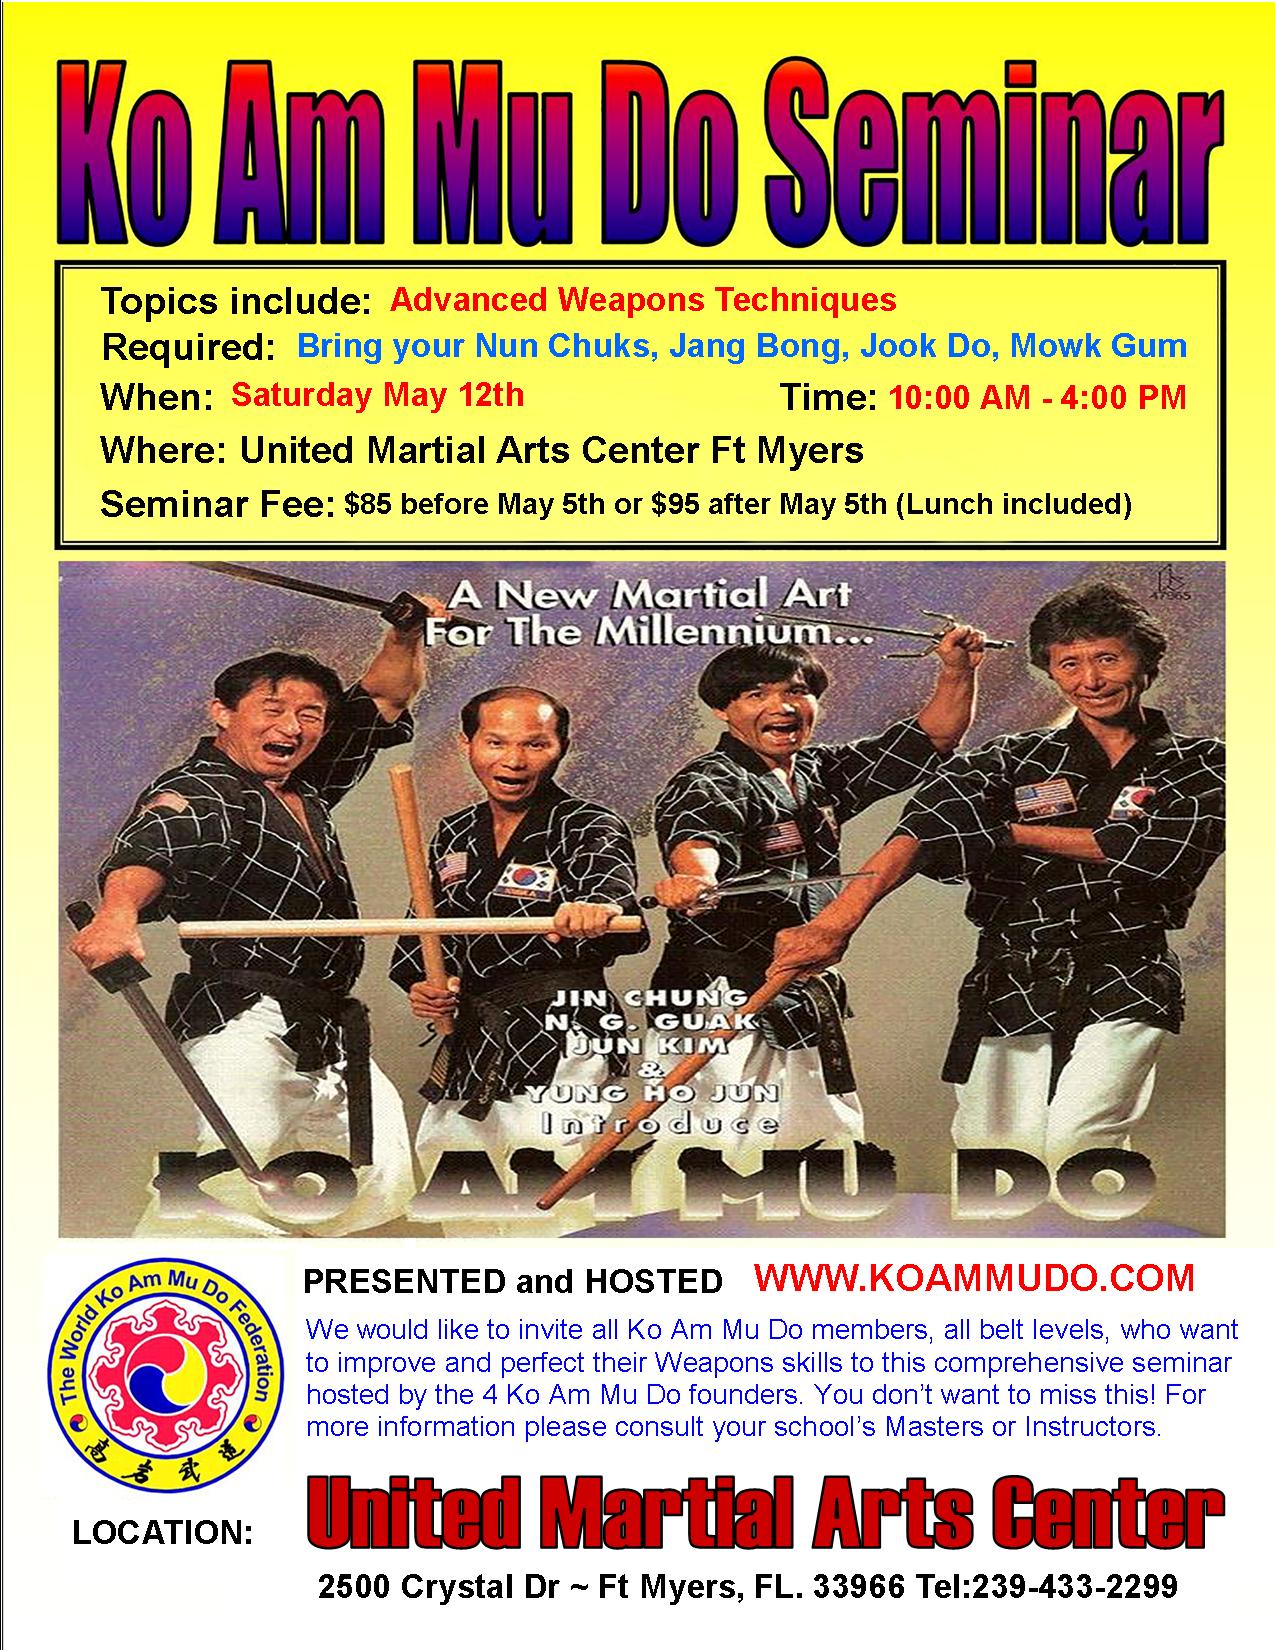 Ko Am Mu Do - United Martial Arts Center